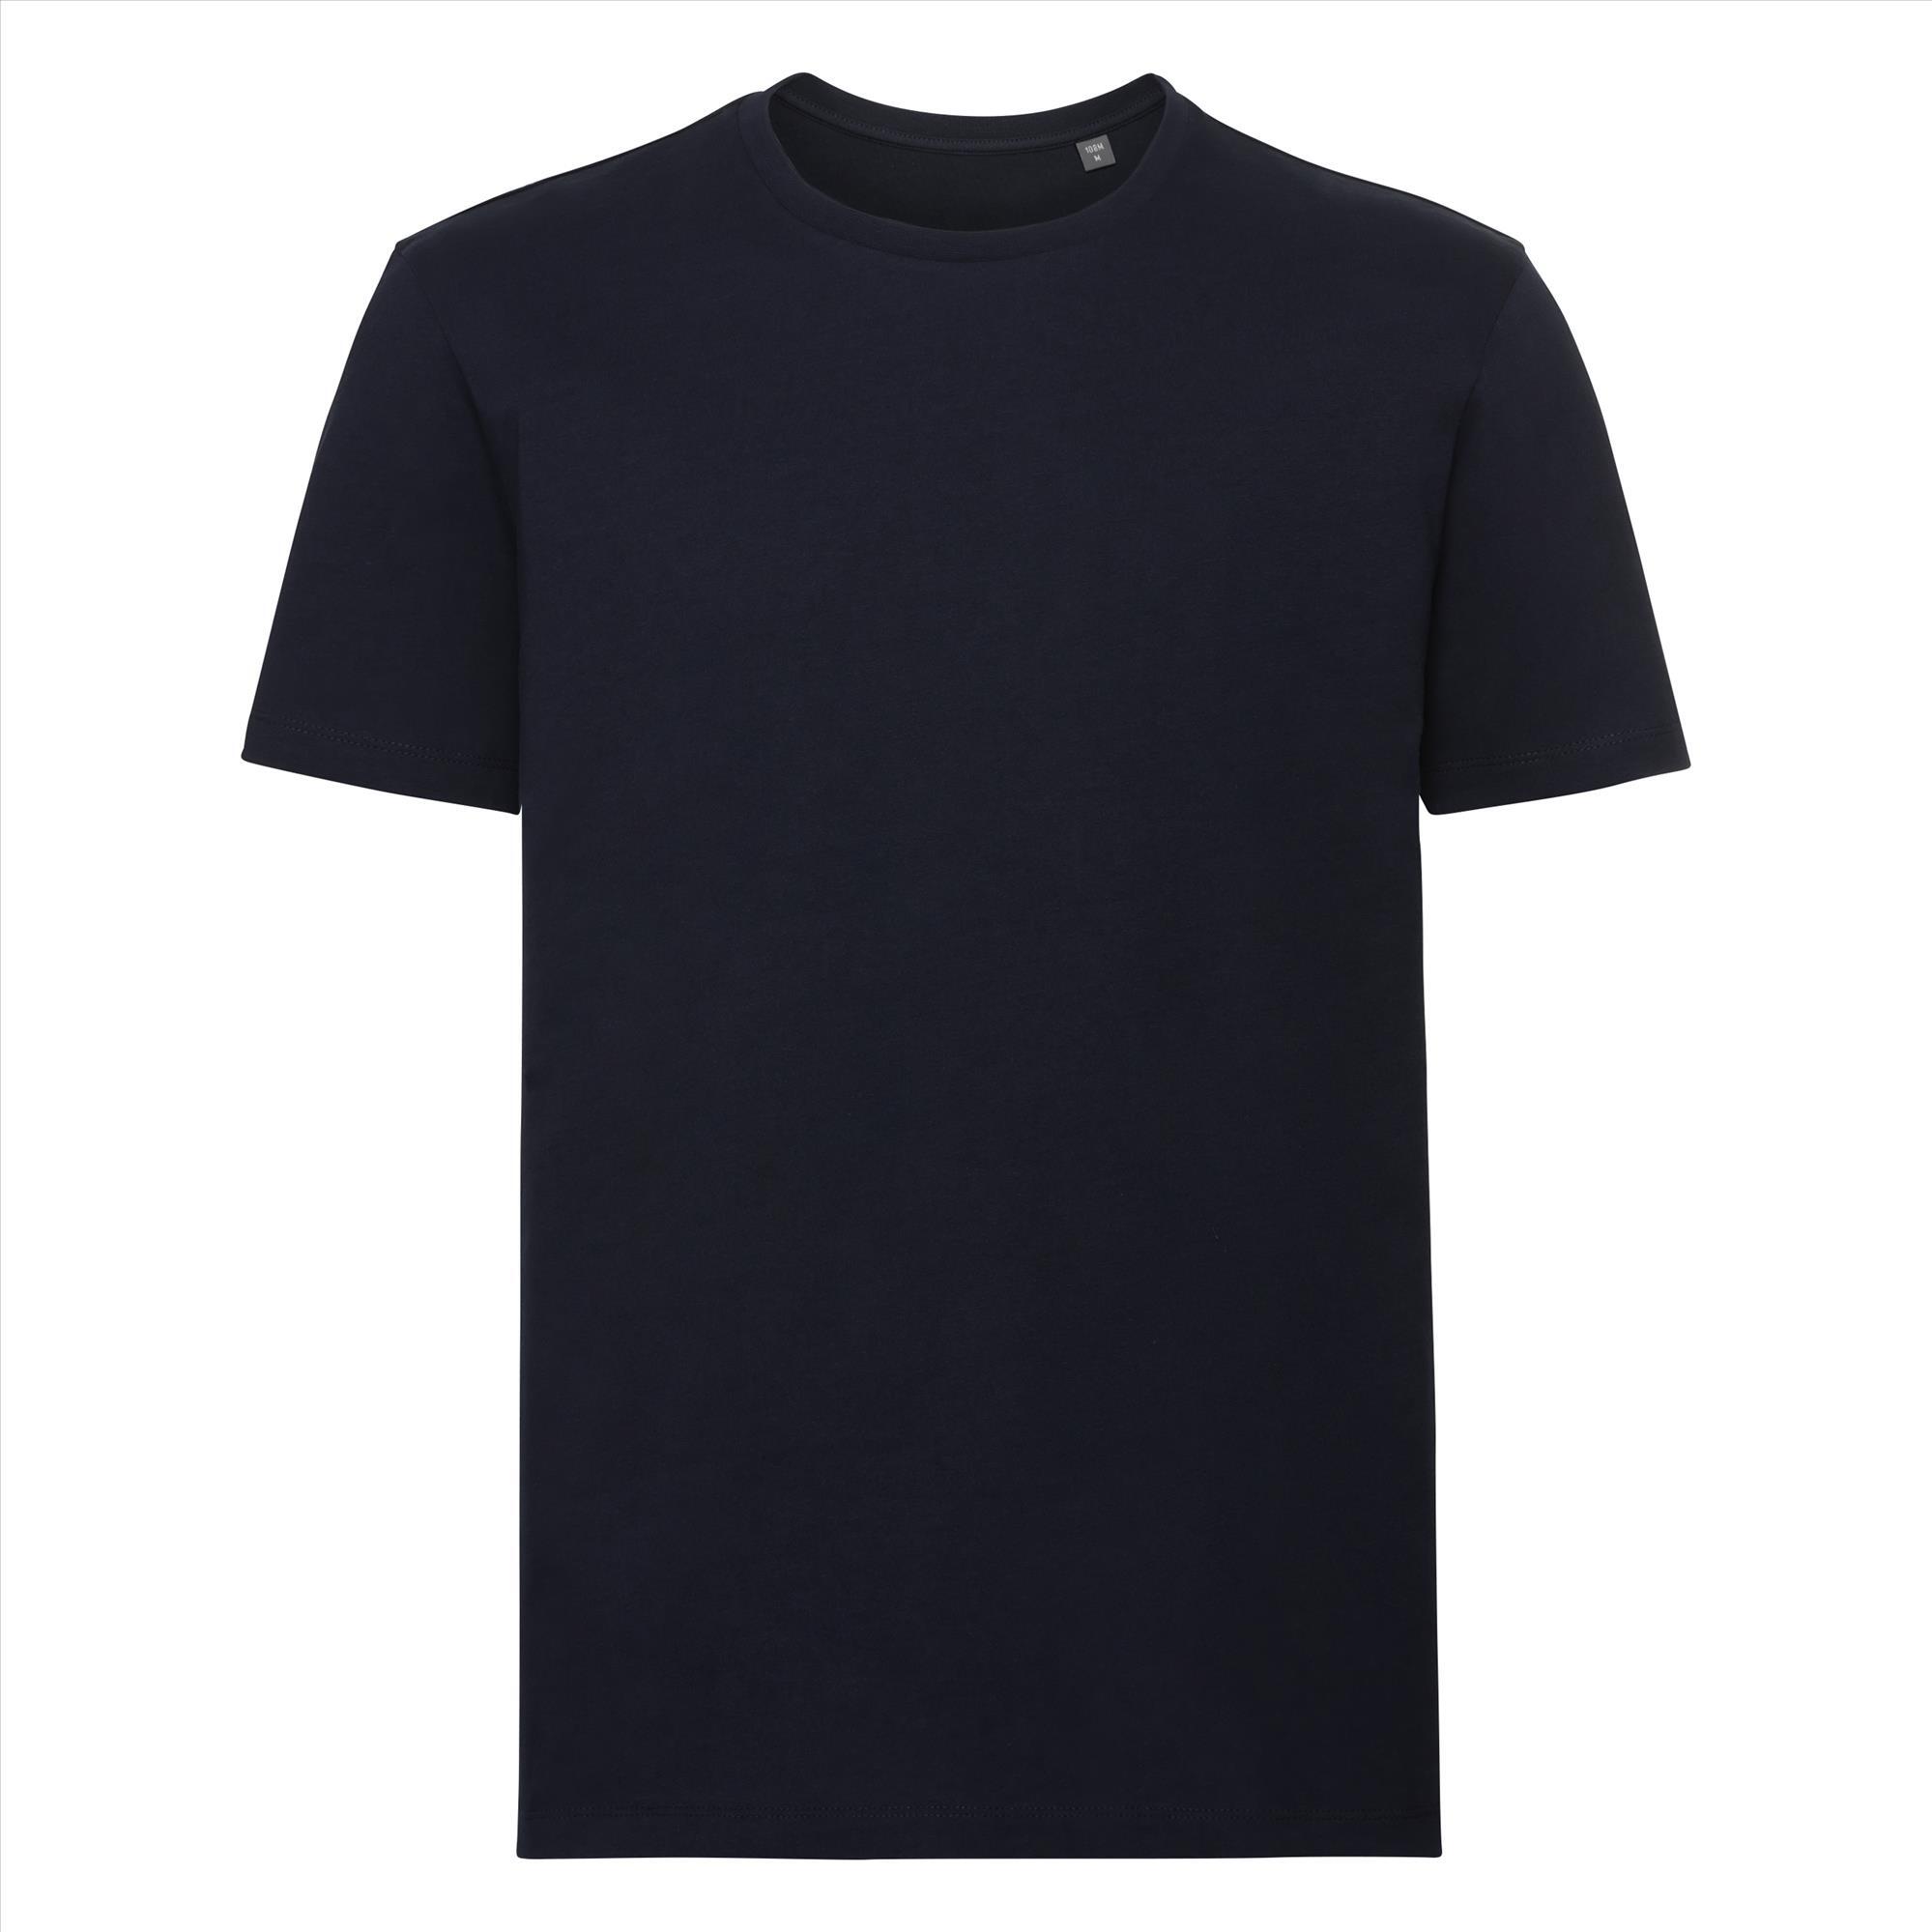 Duurzaam T-shirt voor hem donkerblauw te personaliseren te bedrukken